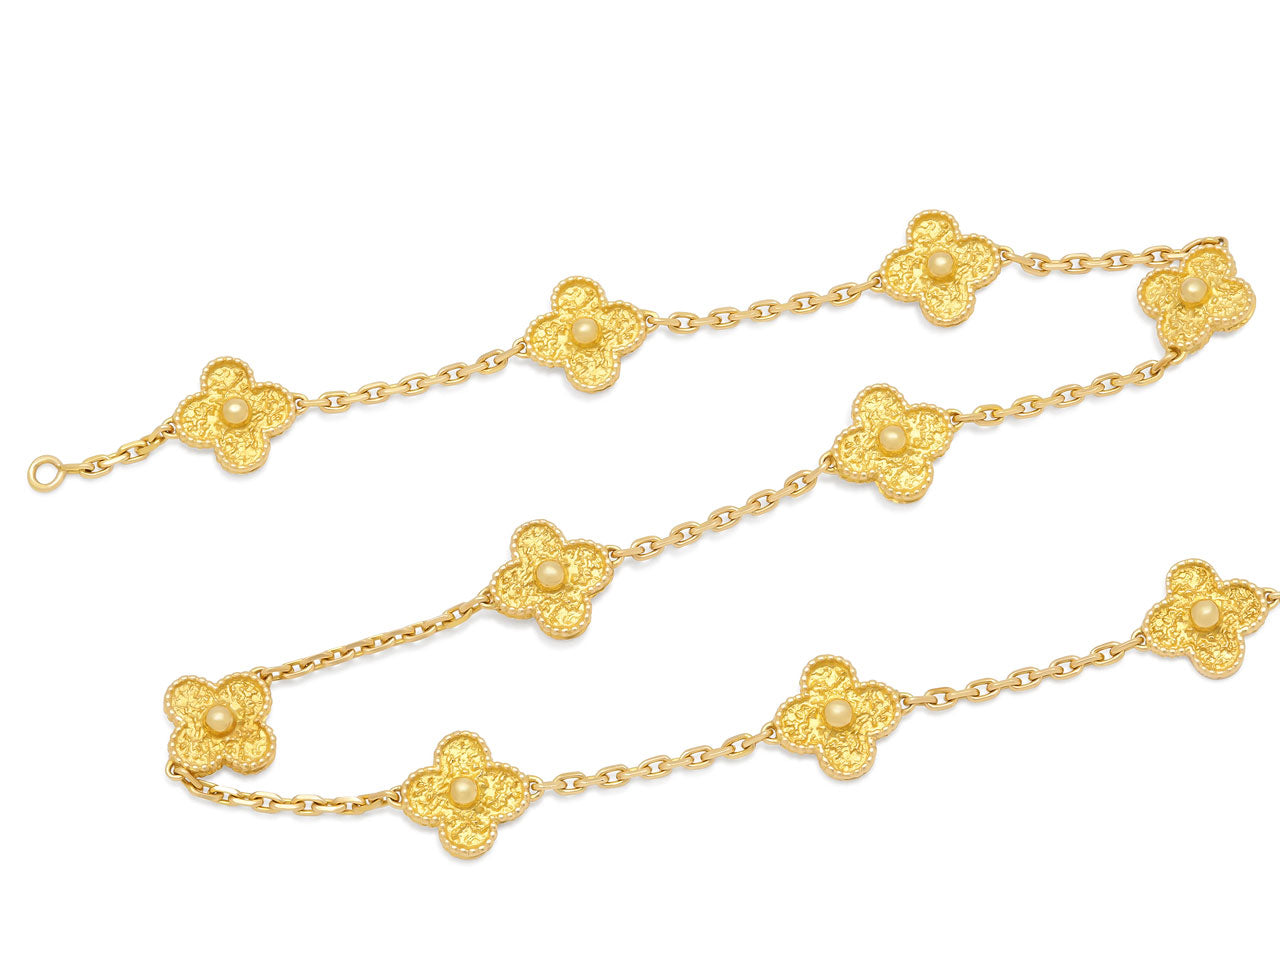 Van Cleef & Arpels 'Vintage Alhambra' Necklace, 10 Motifs, in 18K Gold